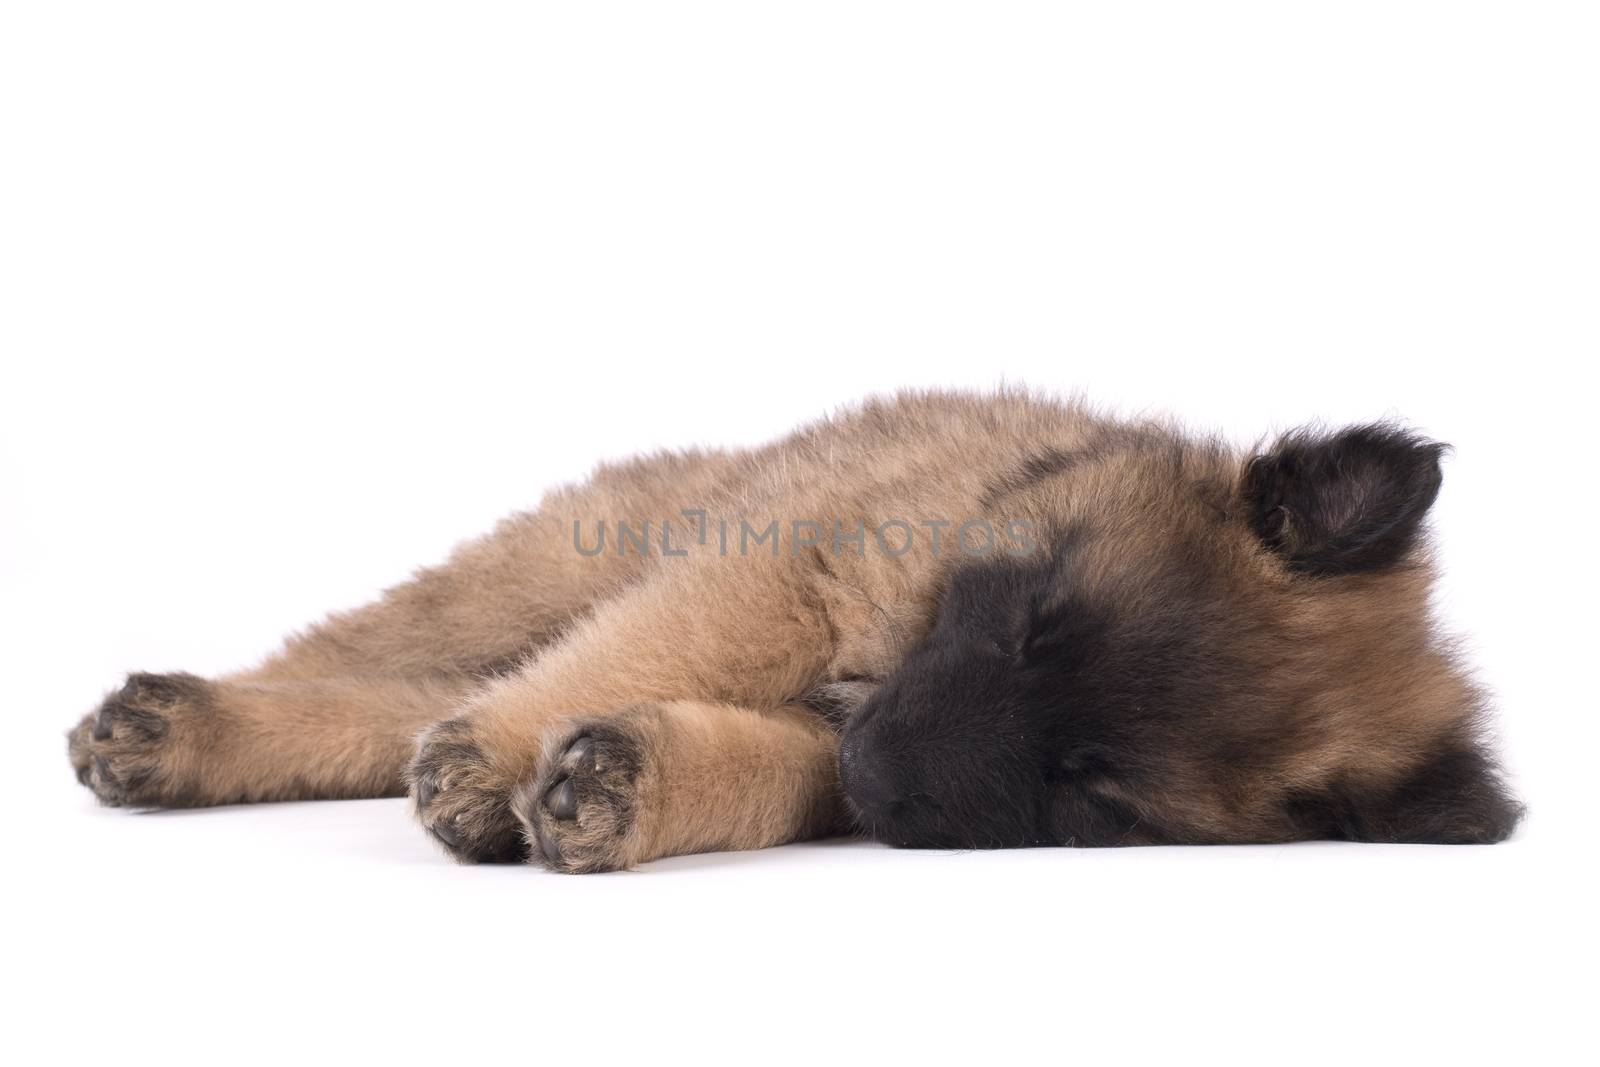 Puppy dog, Belgian Shepherd Tervuren, sleeping, studio backgroun by avanheertum